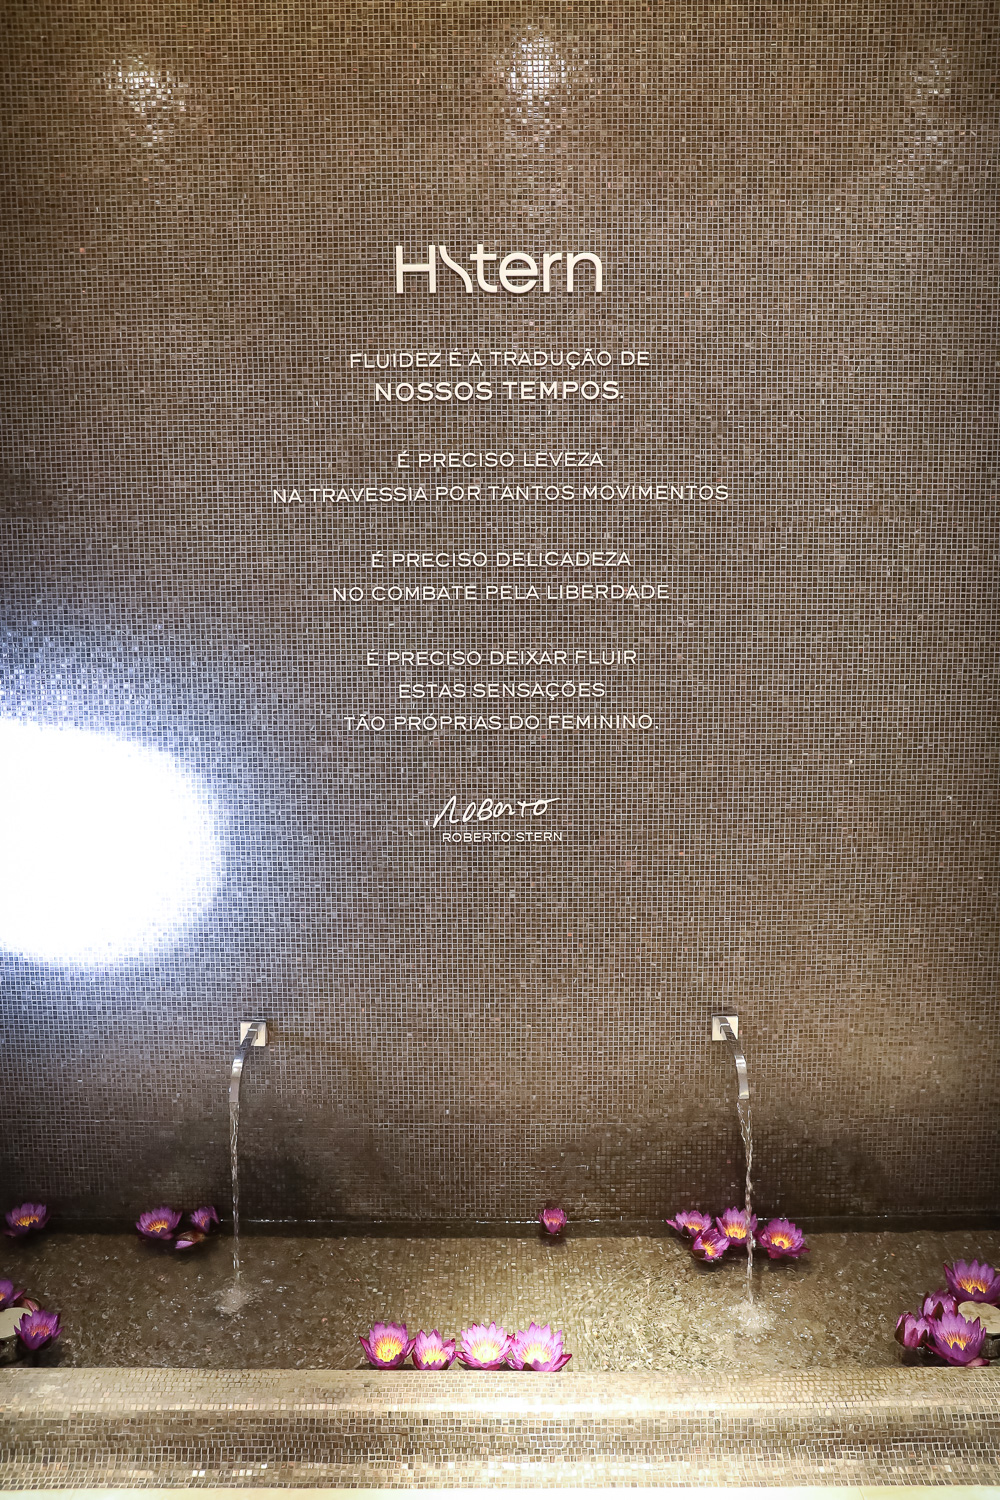 evento-hstern-flower-bruna-marquezine